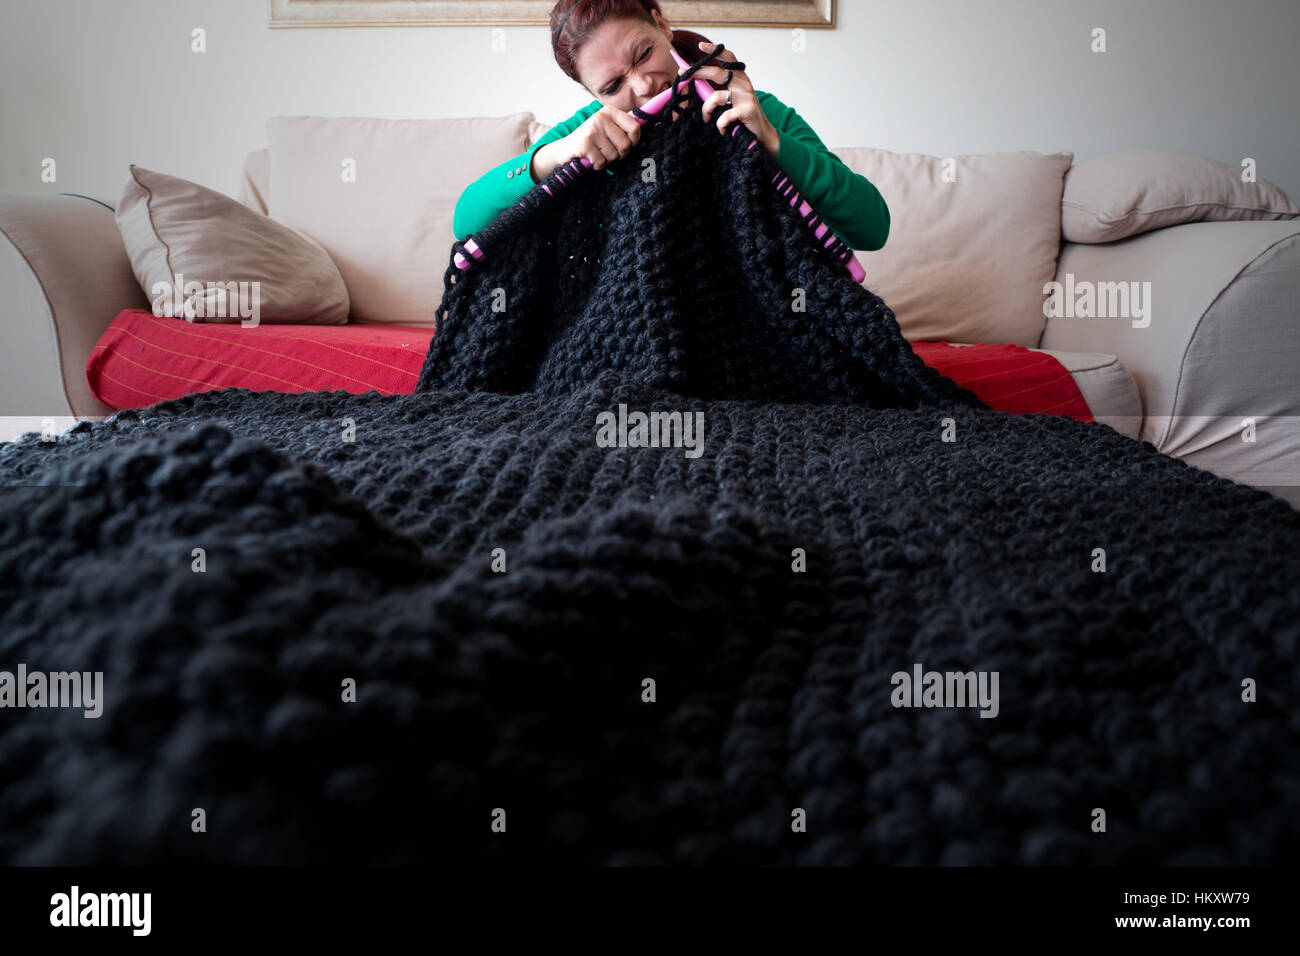 Woman knitting une couverture avec de grandes aiguilles à tricoter Banque D'Images